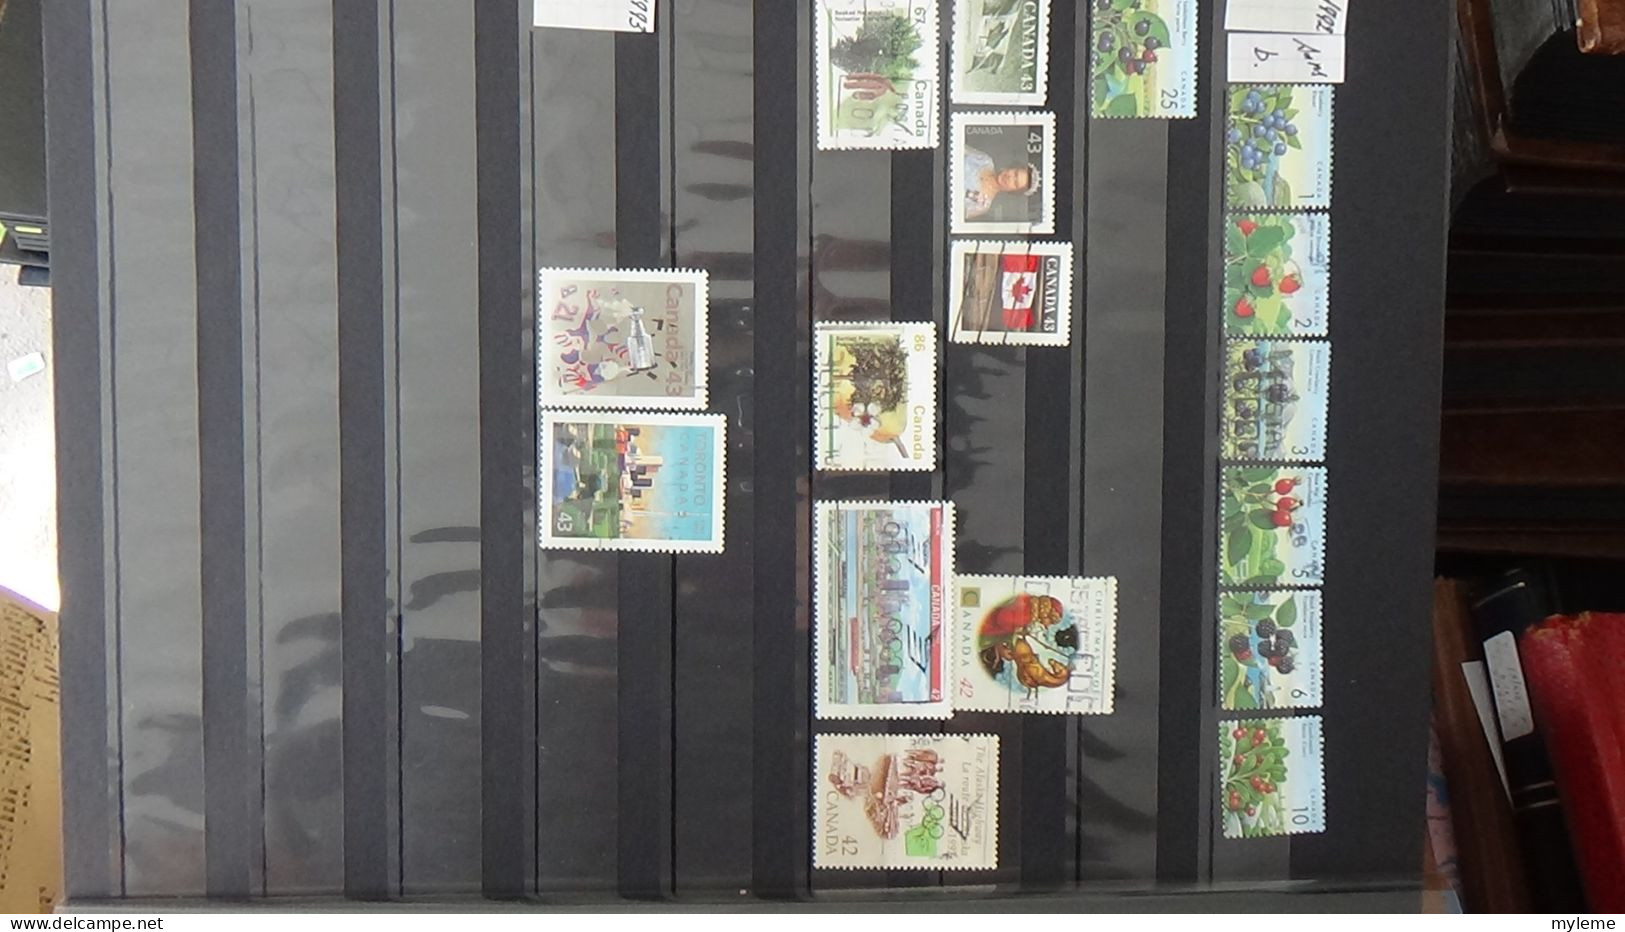 BF25 Ensemble de timbres de divers pays + Mouchons N° 112 + 113 + 114 **. Cote 680 euros